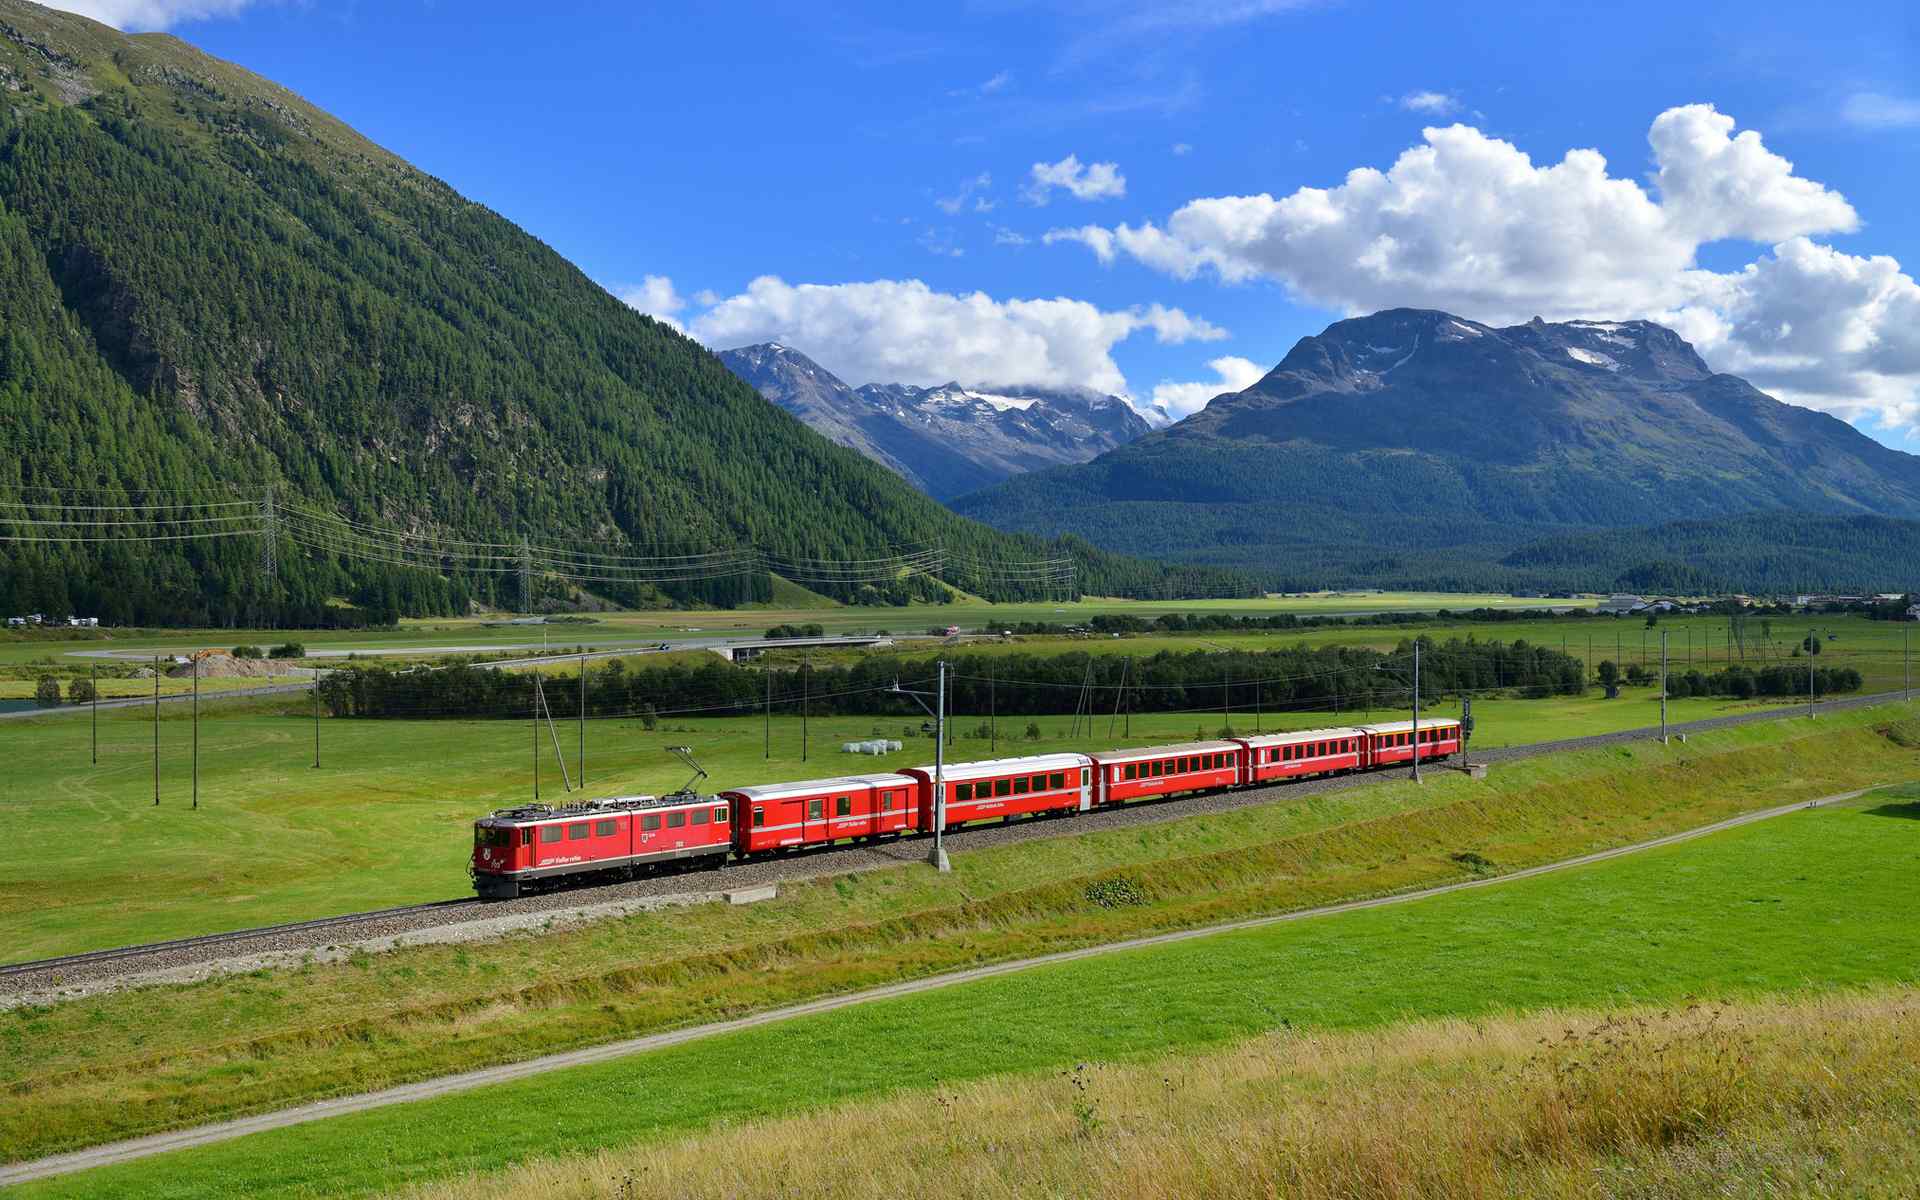 日系小清新红色列车穿越绿色原野的桌面壁纸